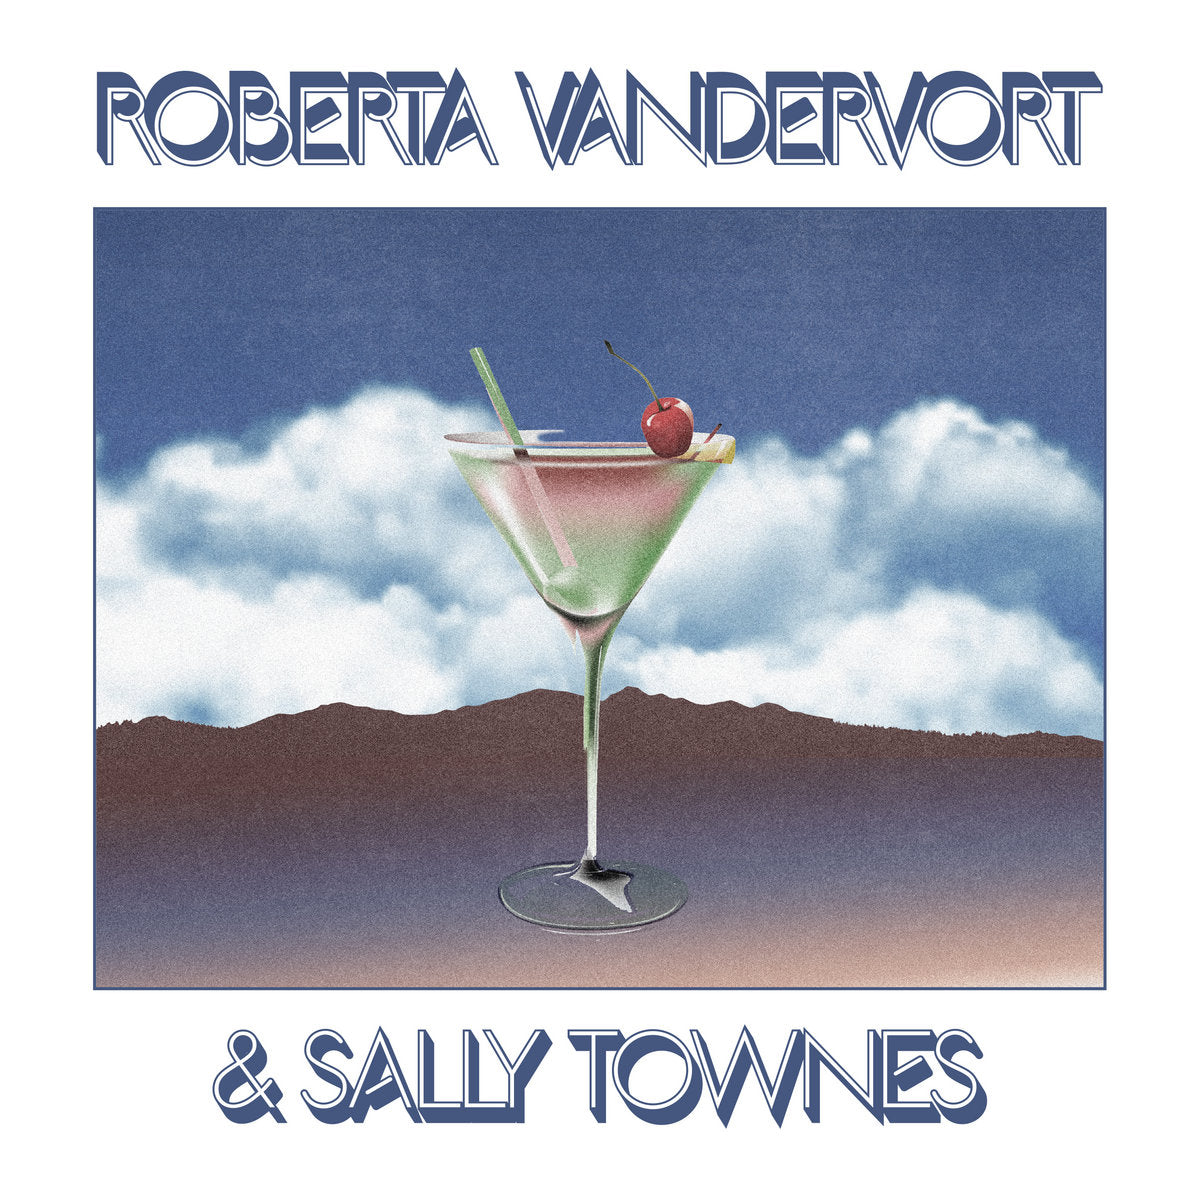 ROBERTA VANDERVORT & SALLY TOWNES - ROBERTA VANDERVORT & SALLY TOWNES Vinyl LP